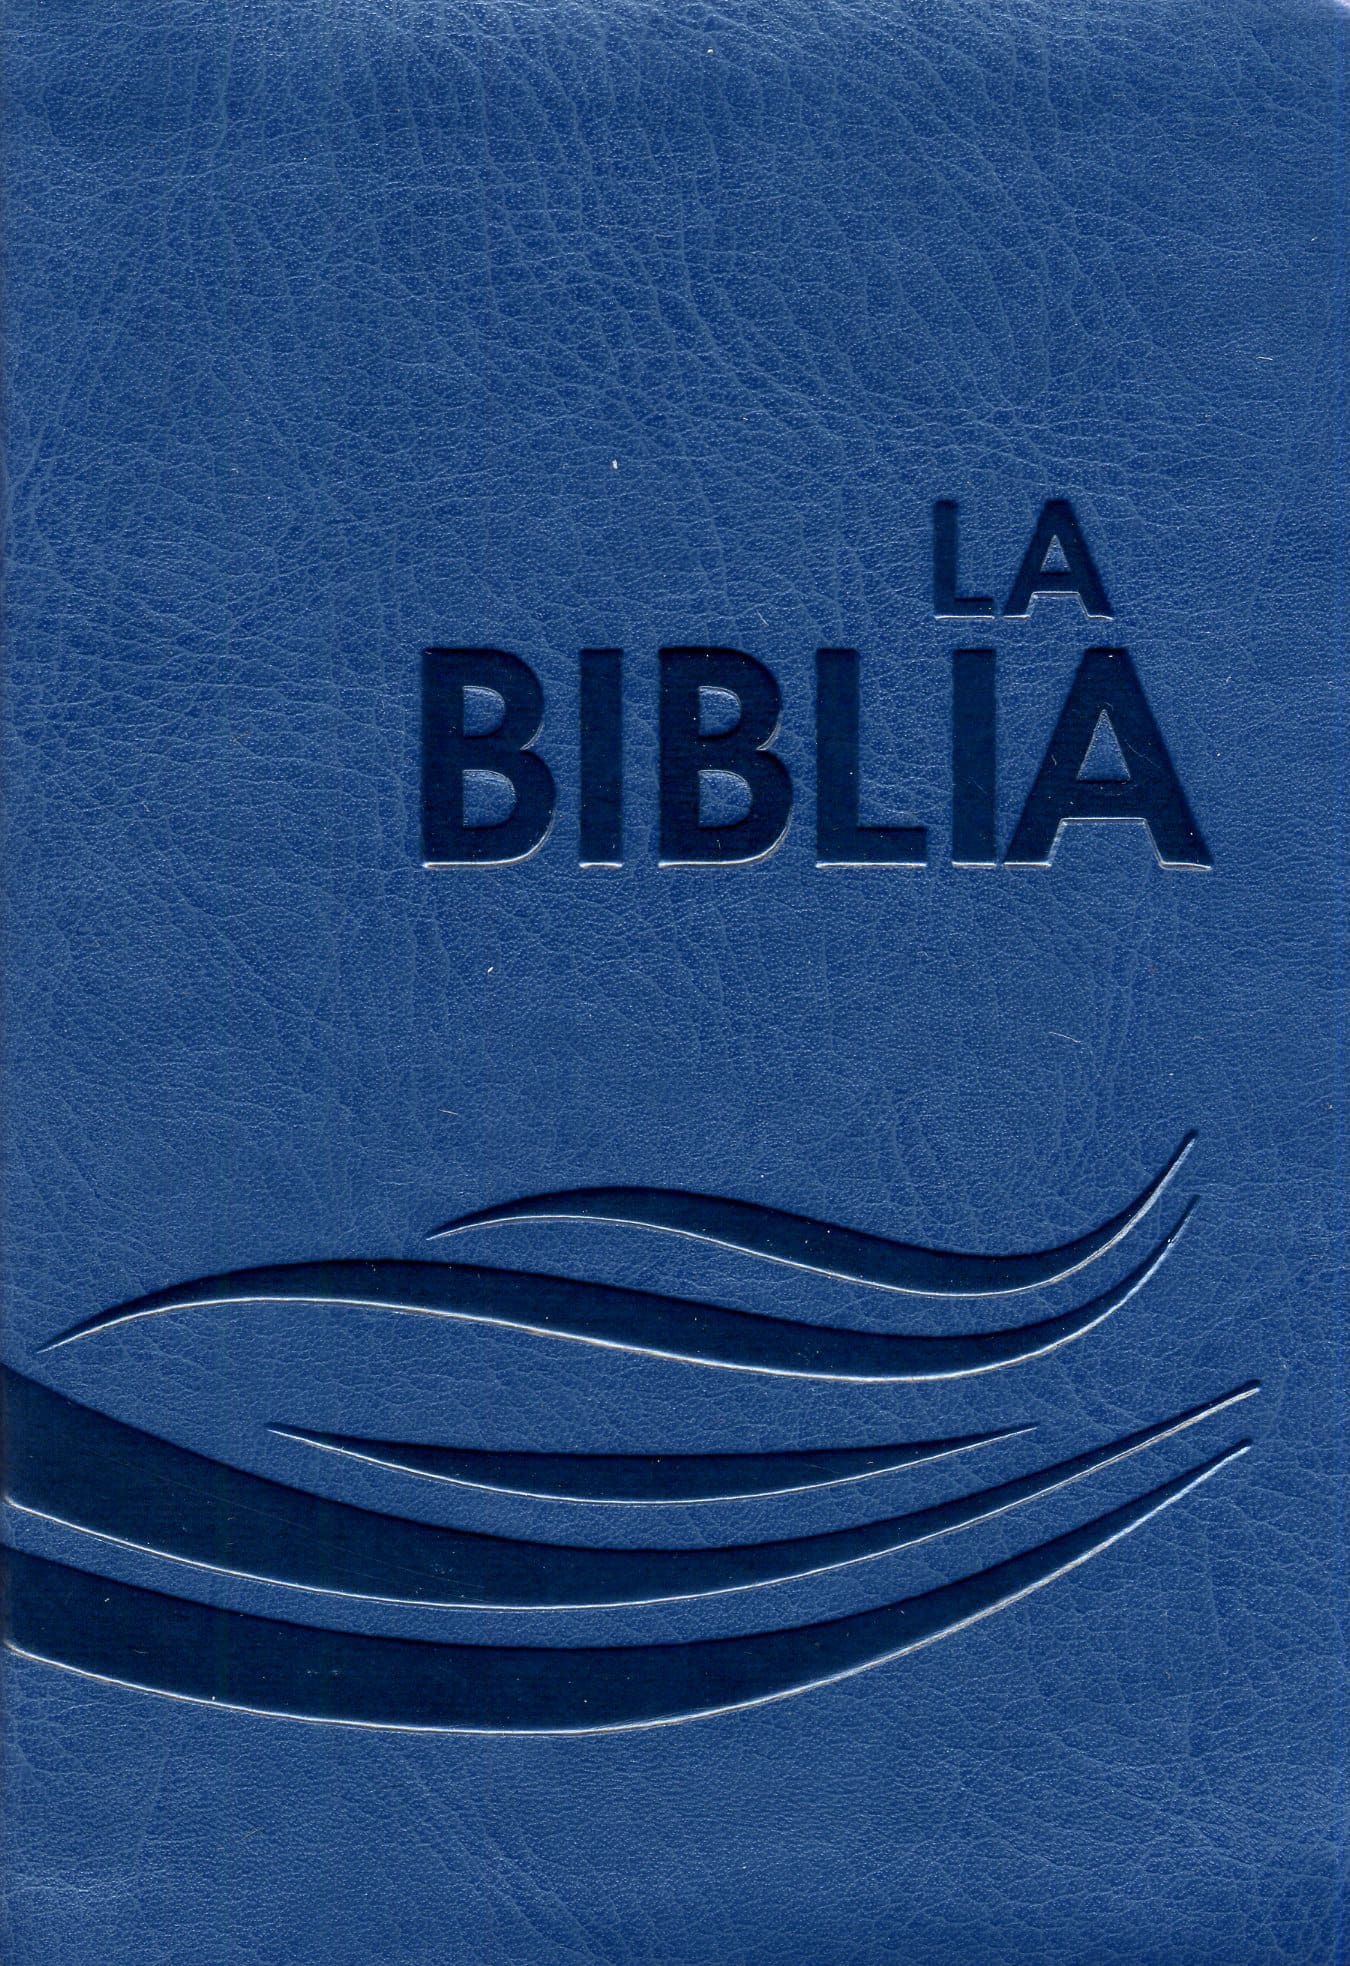 TLA Biblia Tamaño Portátil con Cierre